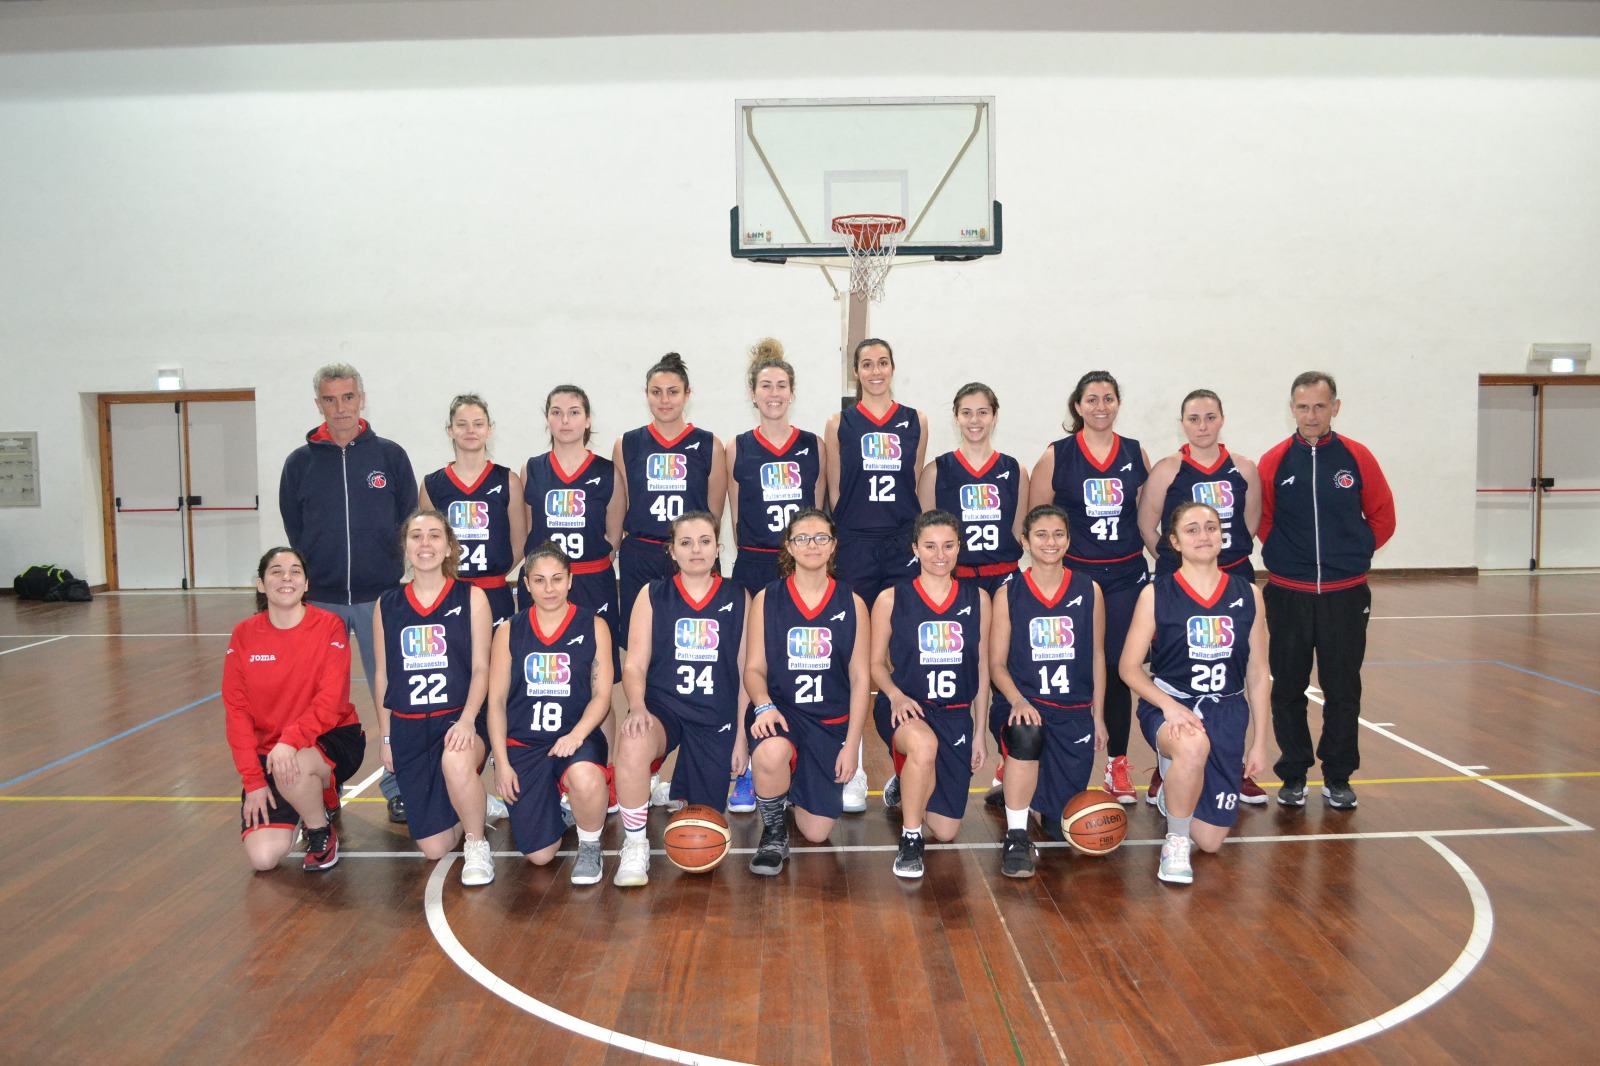 CUS Catania Basket: 10 su 10 per la ragazze di coach Vaccino